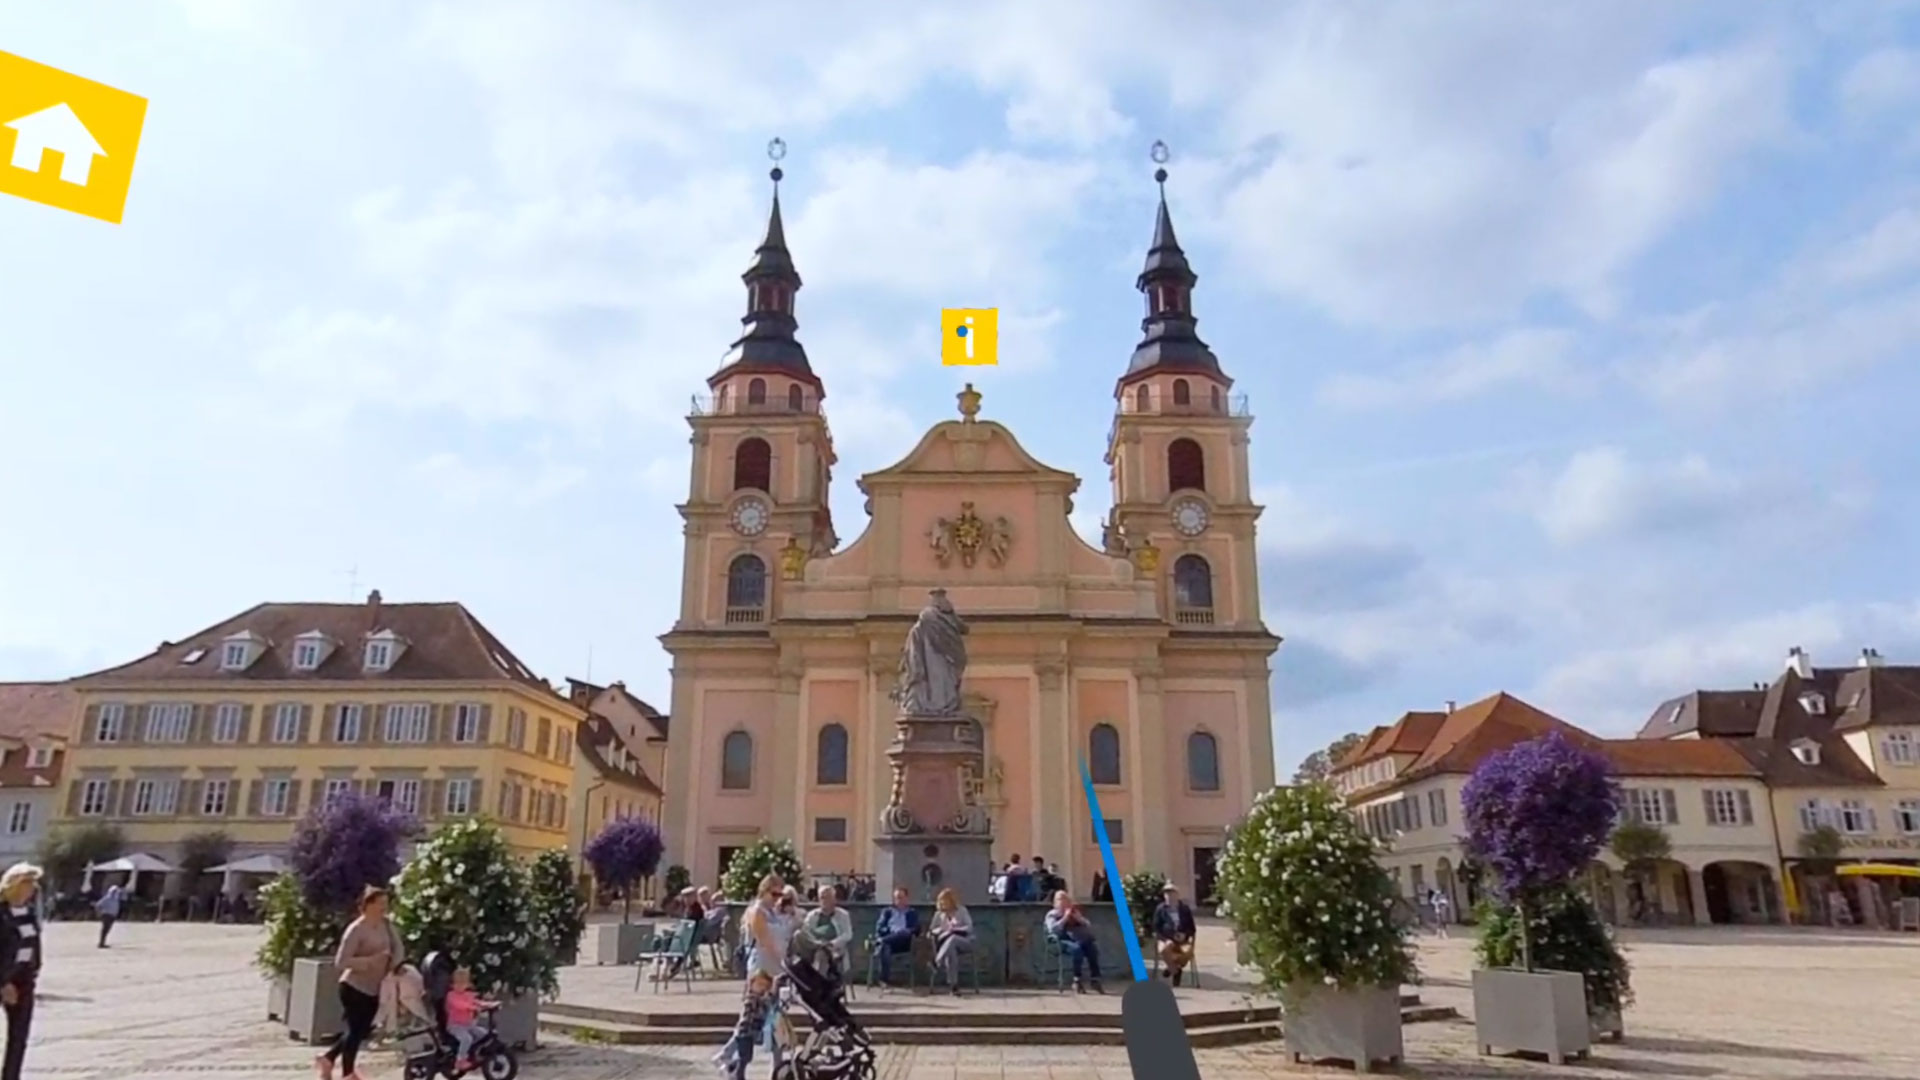 eine lachsrosane Kirche mit zwei spitzen Türmen steht vor einem Brunnen auf einem Marktplatz